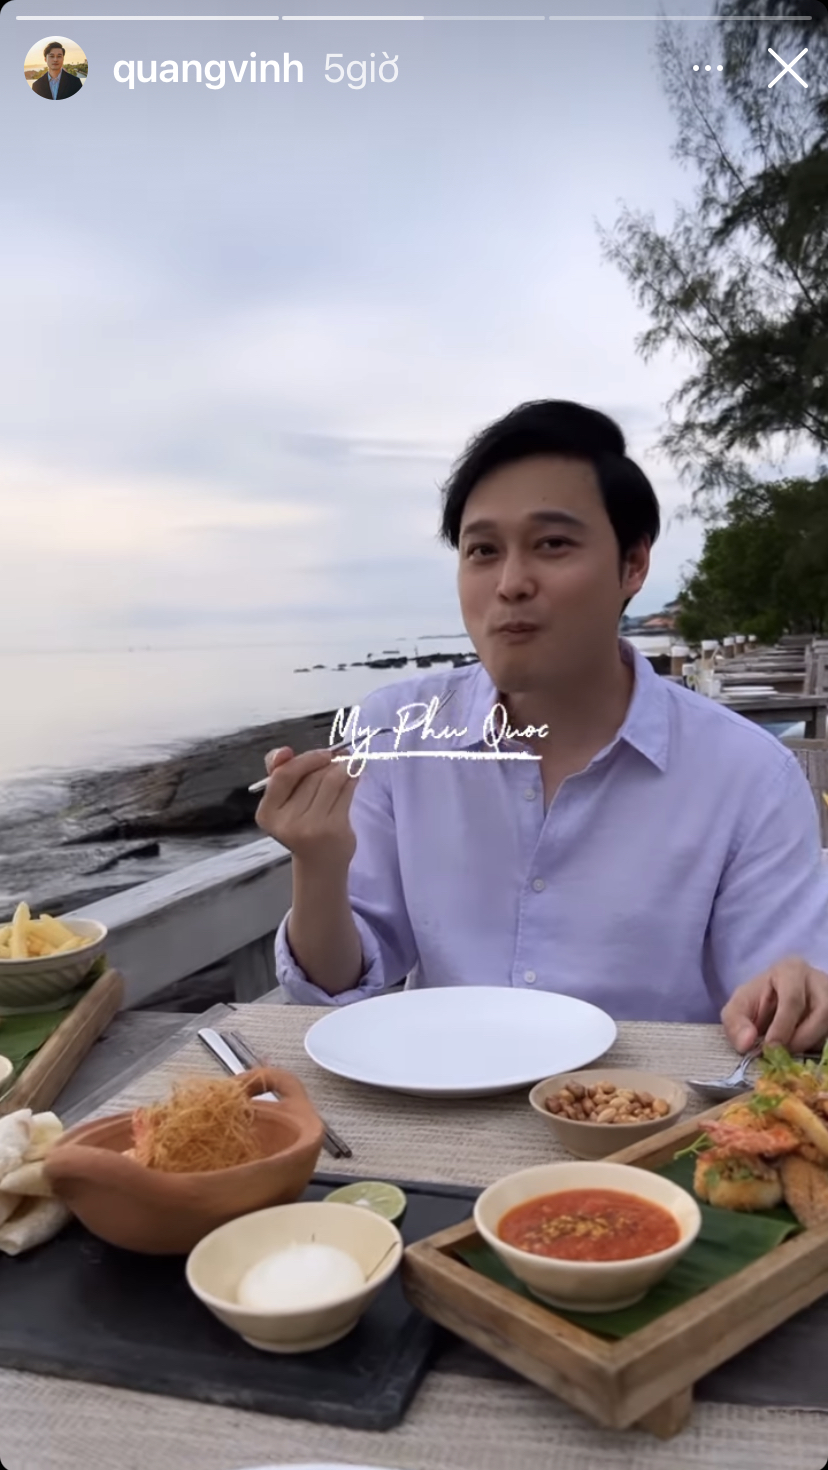 Trong chuyến du lịch Phú Quốc của mình, ca sĩ Quang Vinh đã chia sẻ khoảnh khắc thưởng thức bàn đồ ăn thịnh soạn với nhiều món ngon và bổ dưỡng.